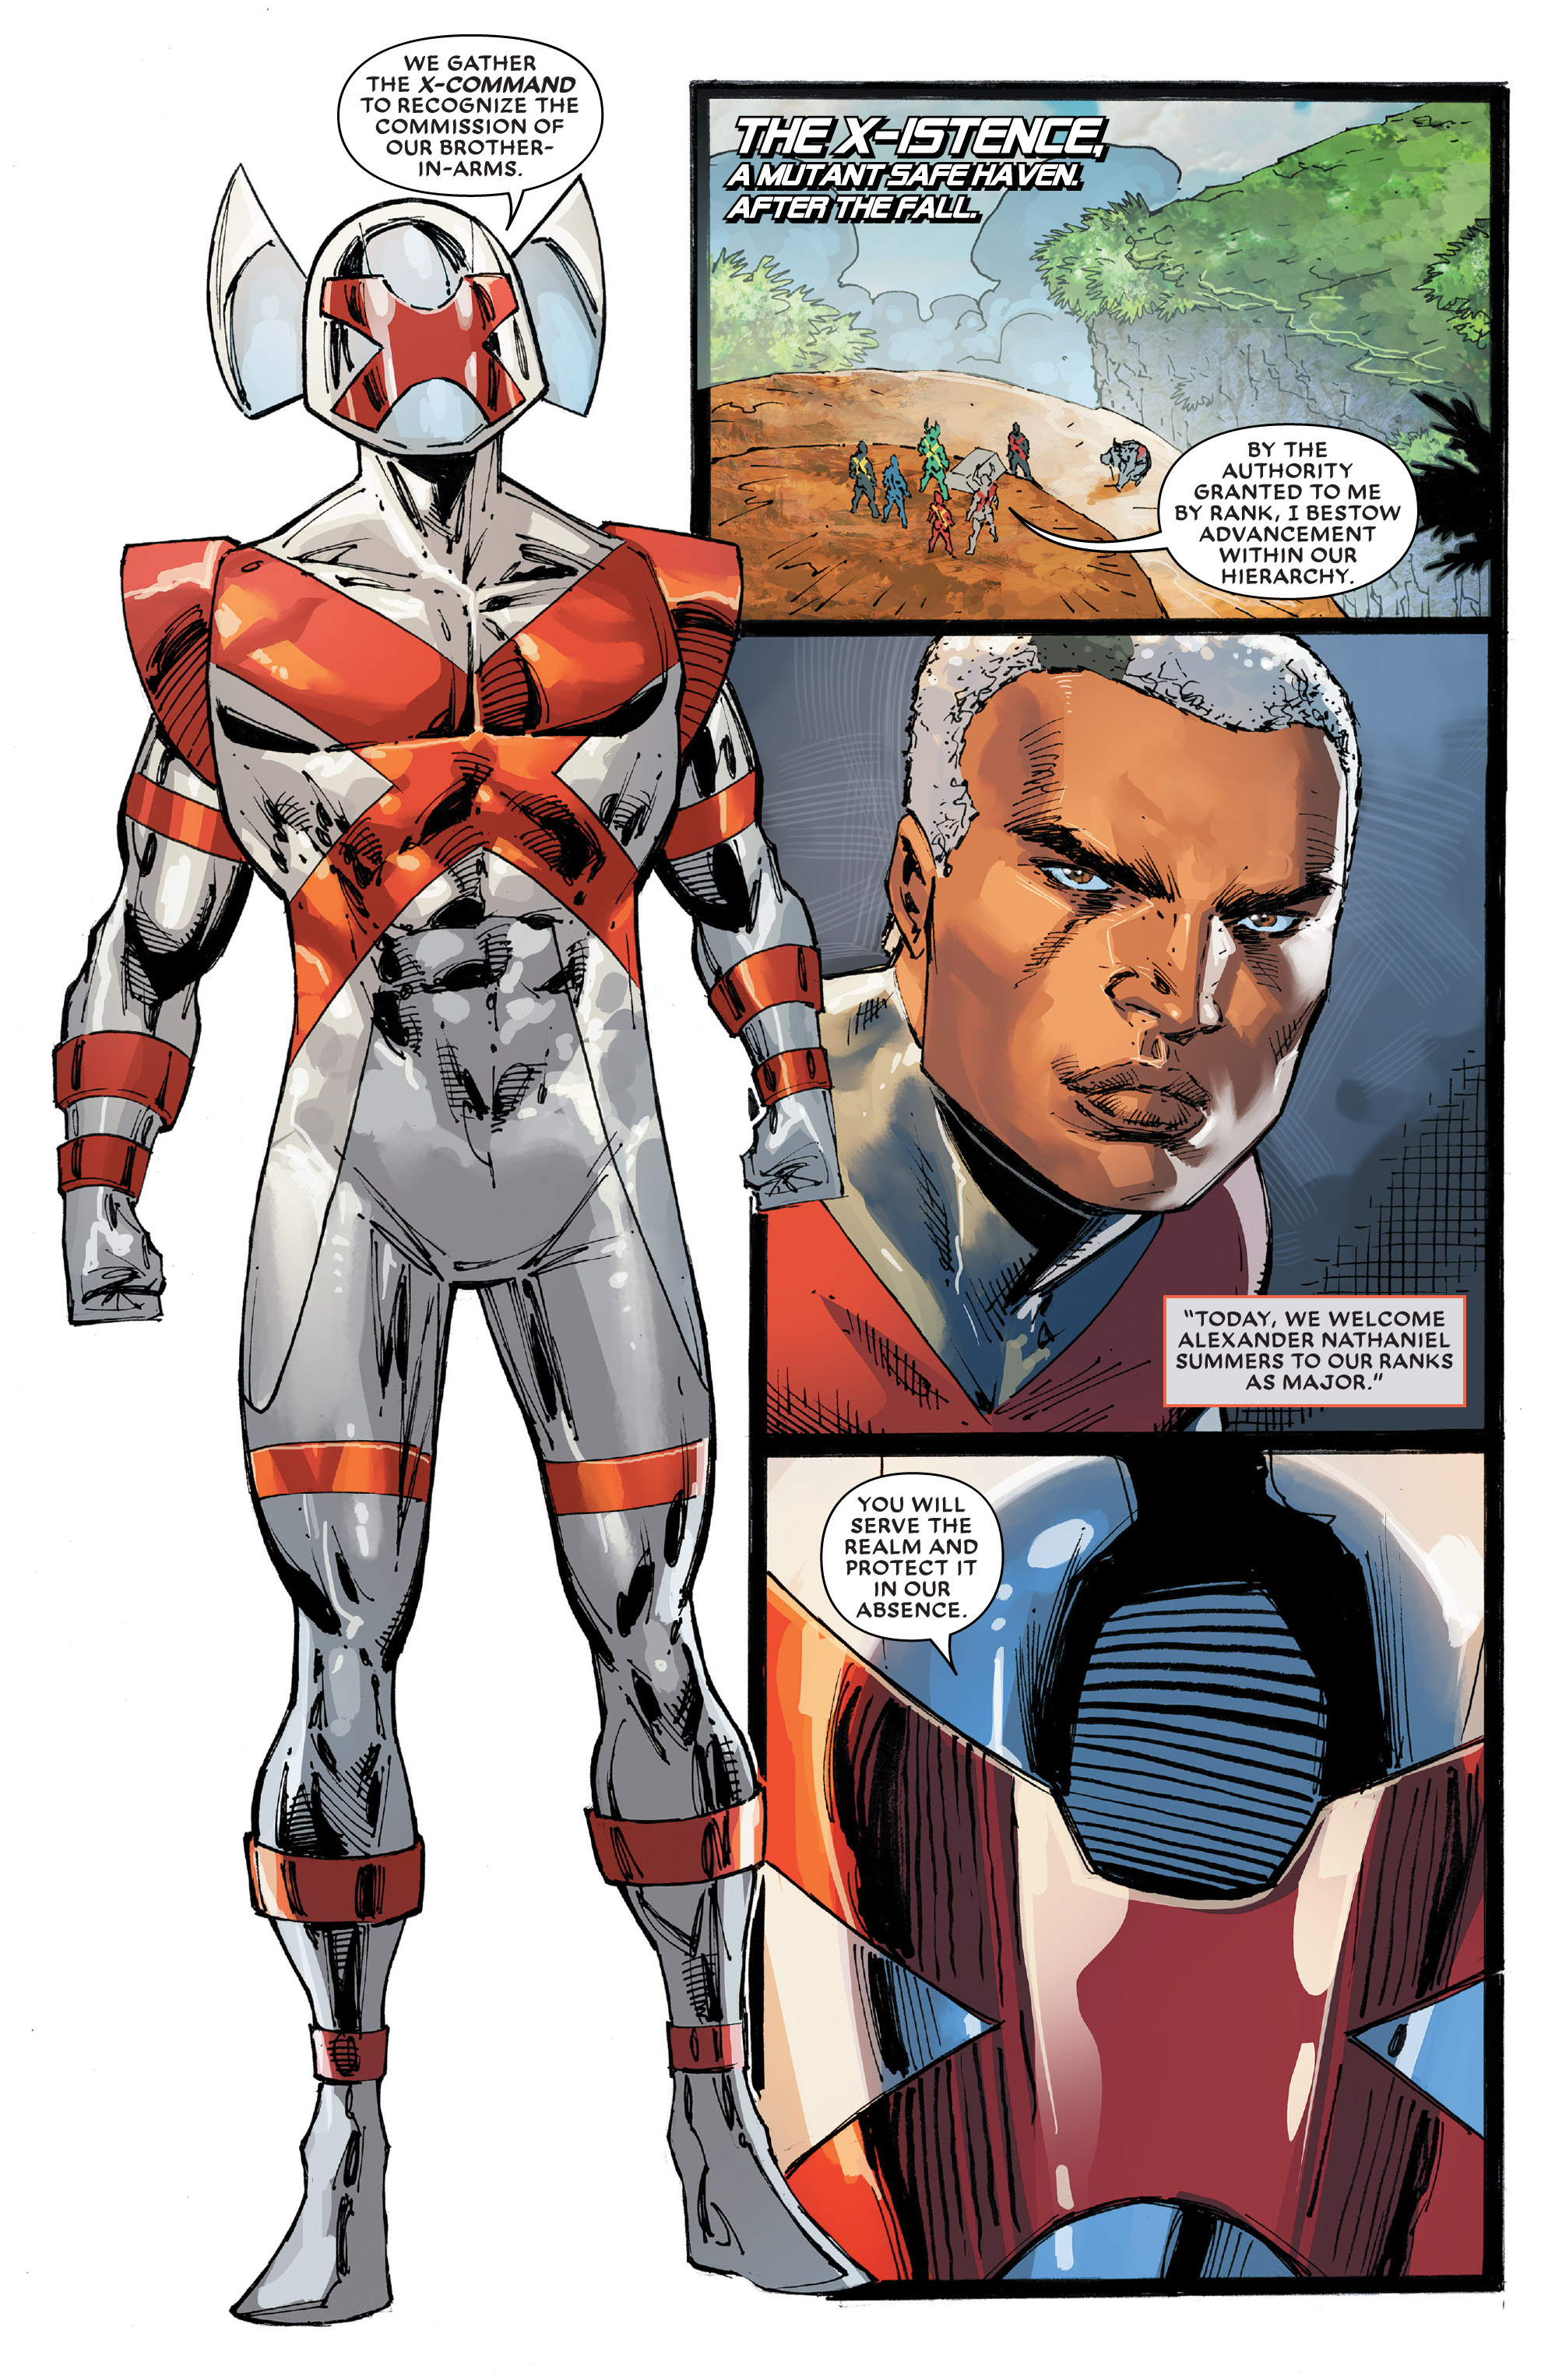 Major X #0 Marvel Comics 2019